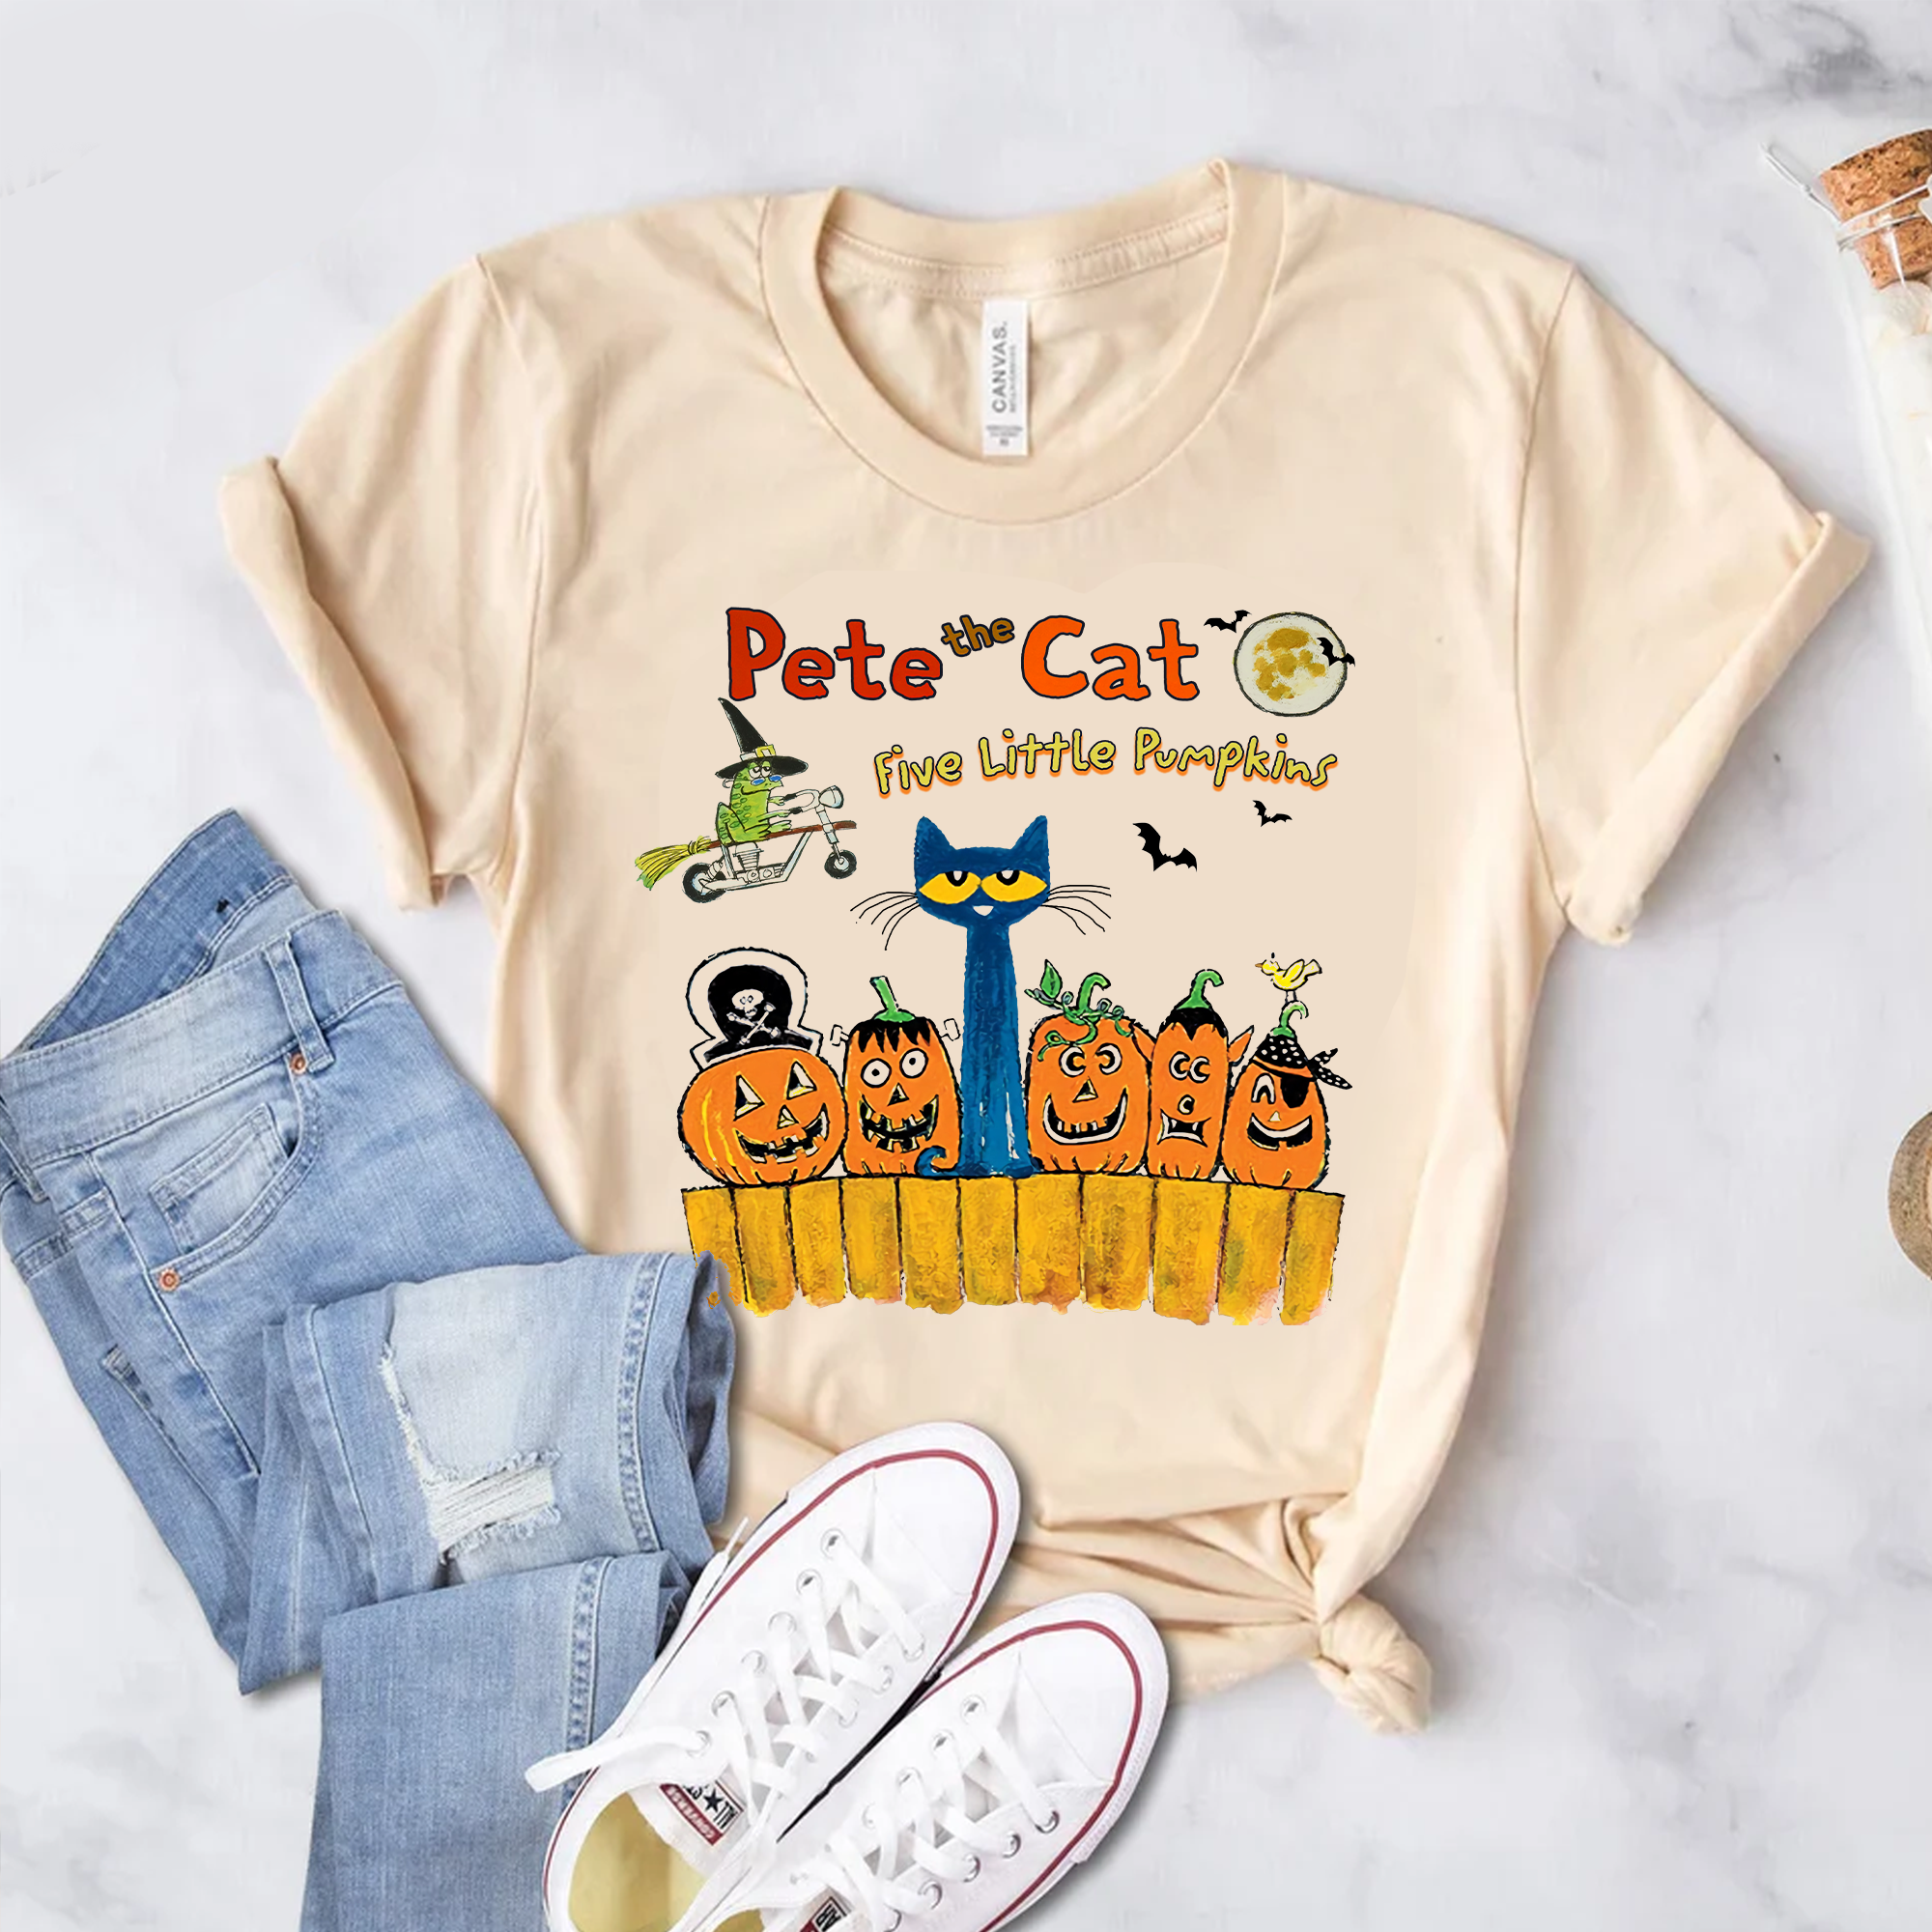 Pete The Cat Halloween Shirt, Five Little Pumpkins Shirt, Funny Halloween Shirt Be Kind Shirt, Trick or Pete, Shirt, Pumpkin Halloween Shirt